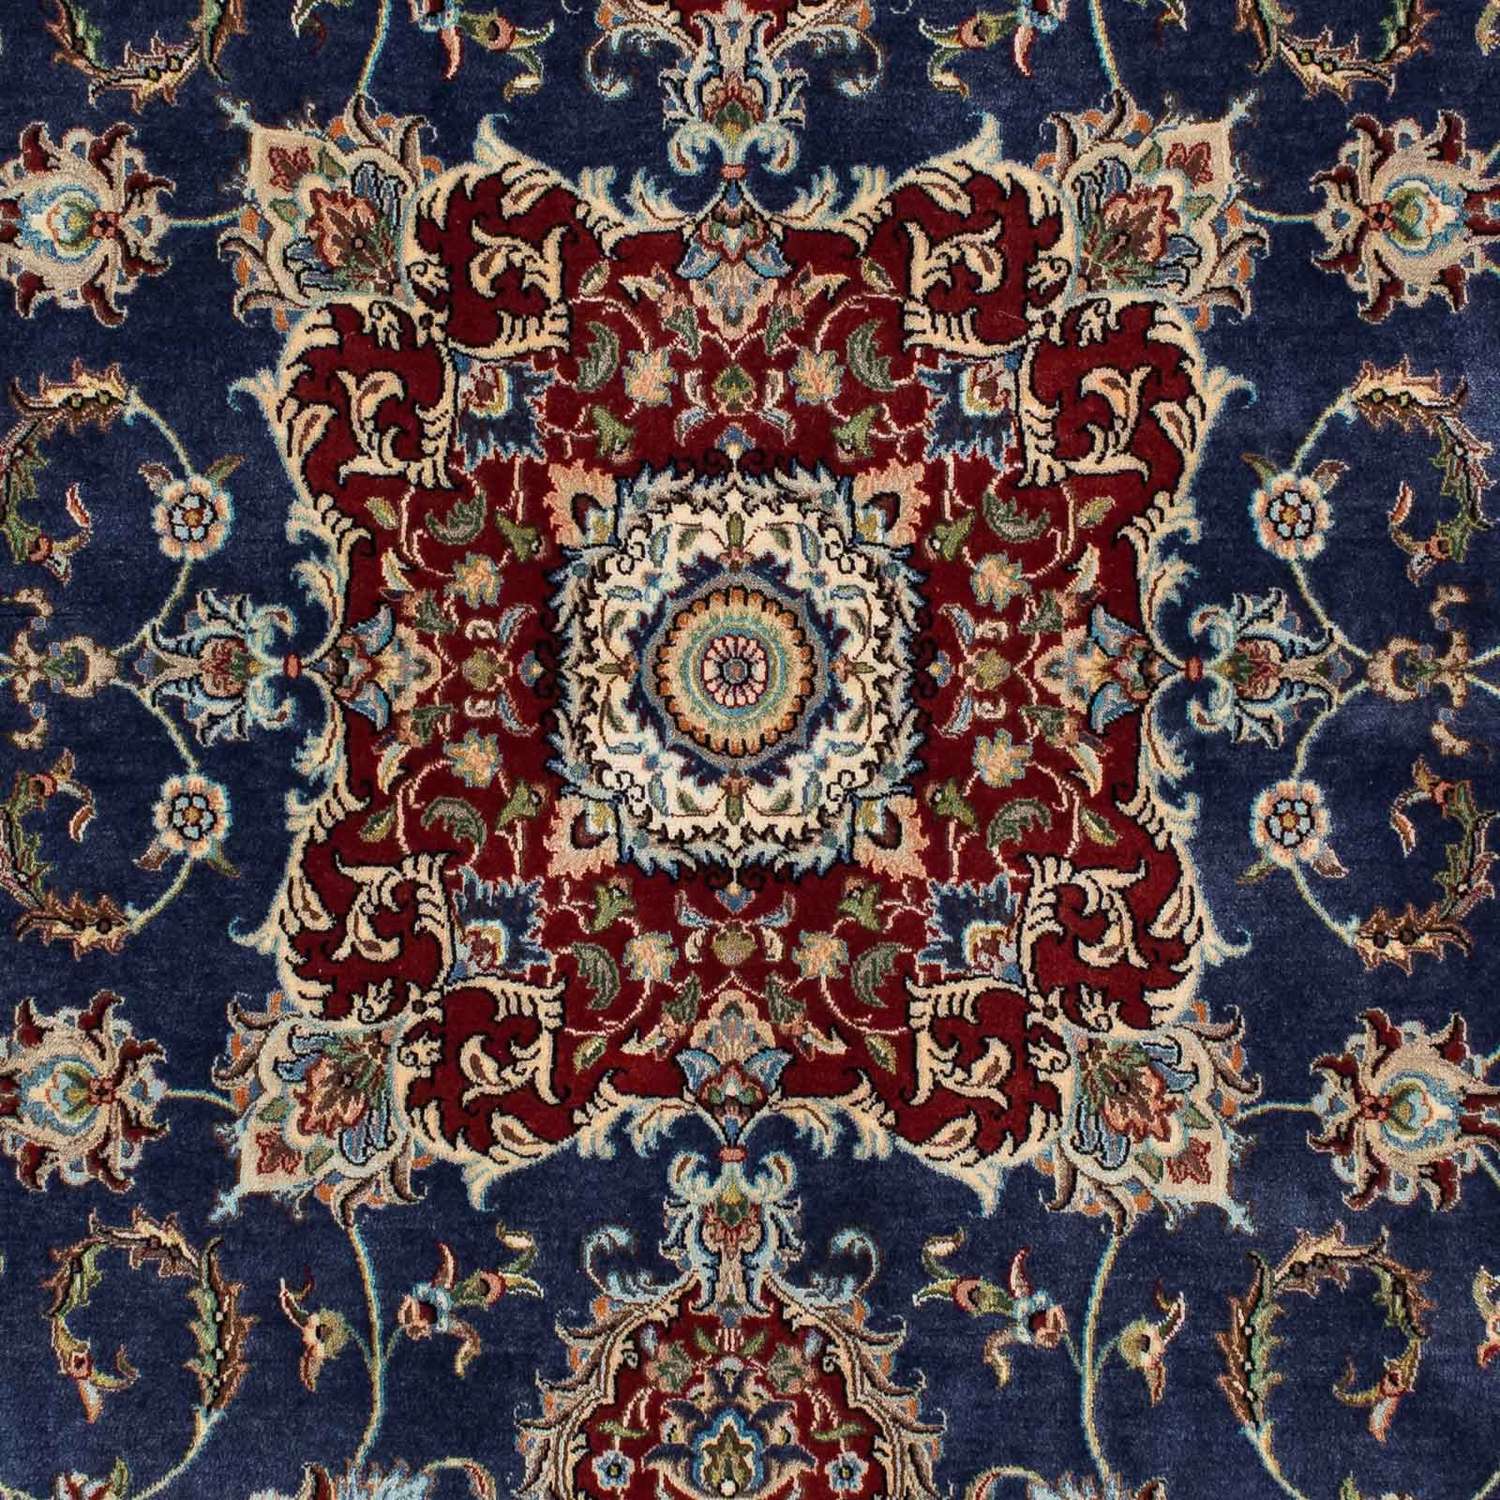 Tapis persan - Ghom - 193 x 133 cm - bleu foncé